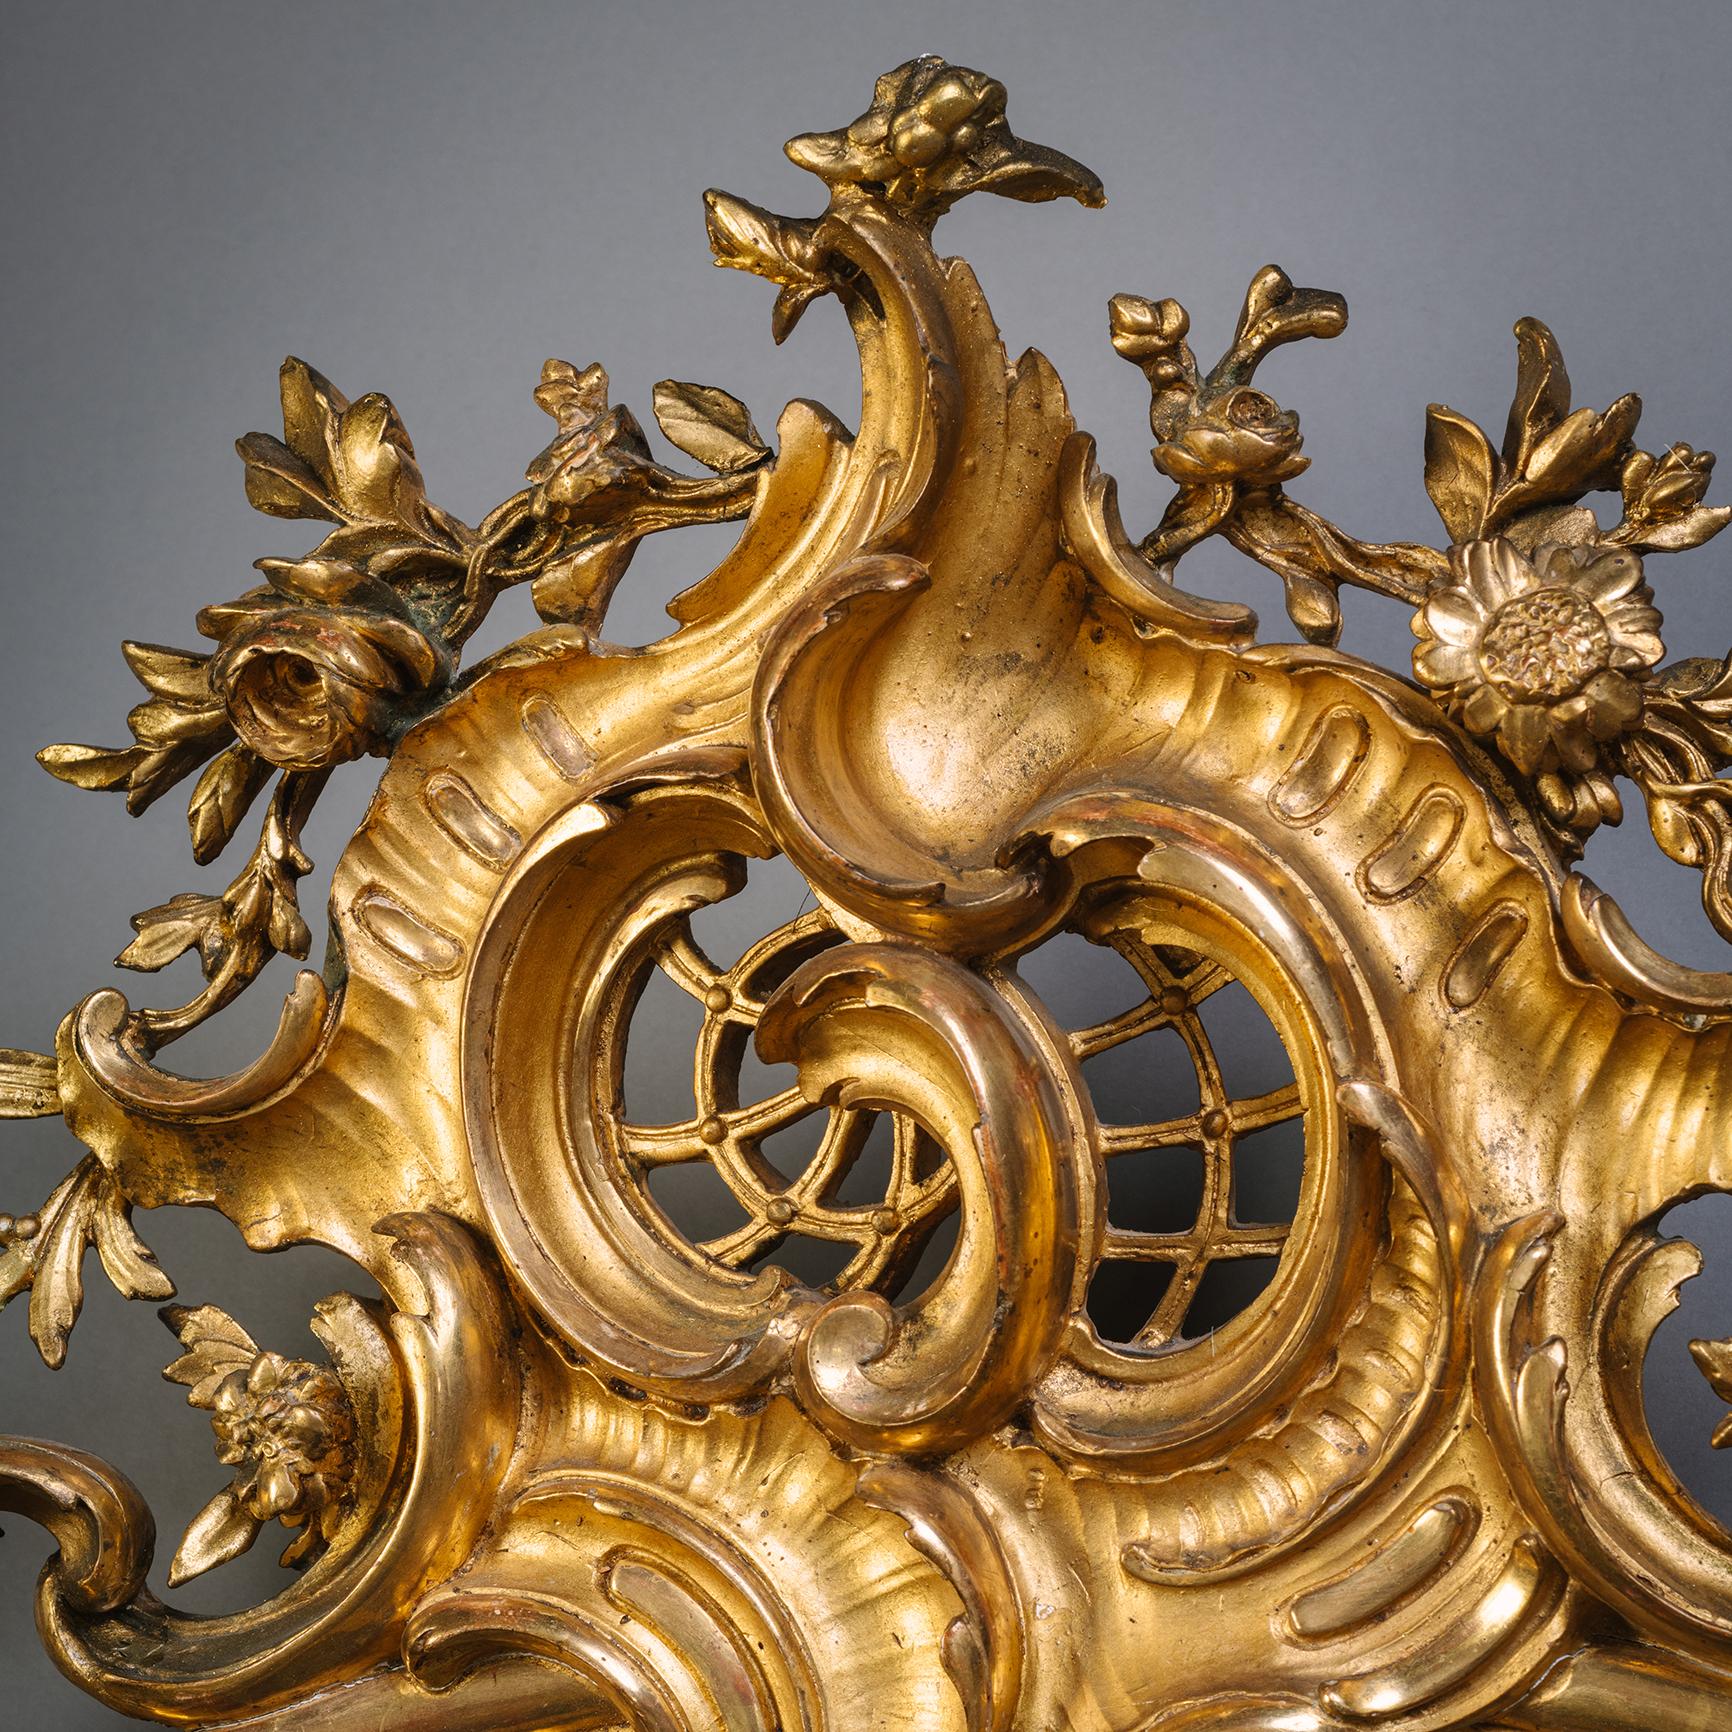 Rare et grande paire de miroirs muraux en bois doré en forme de cartouche de Florentine.

Chacune d'elles est surmontée d'une rocaille ouvragée, ornée de coquillages et de fleurs. Le site  cadre entourant le plateau en forme de cartouche avec